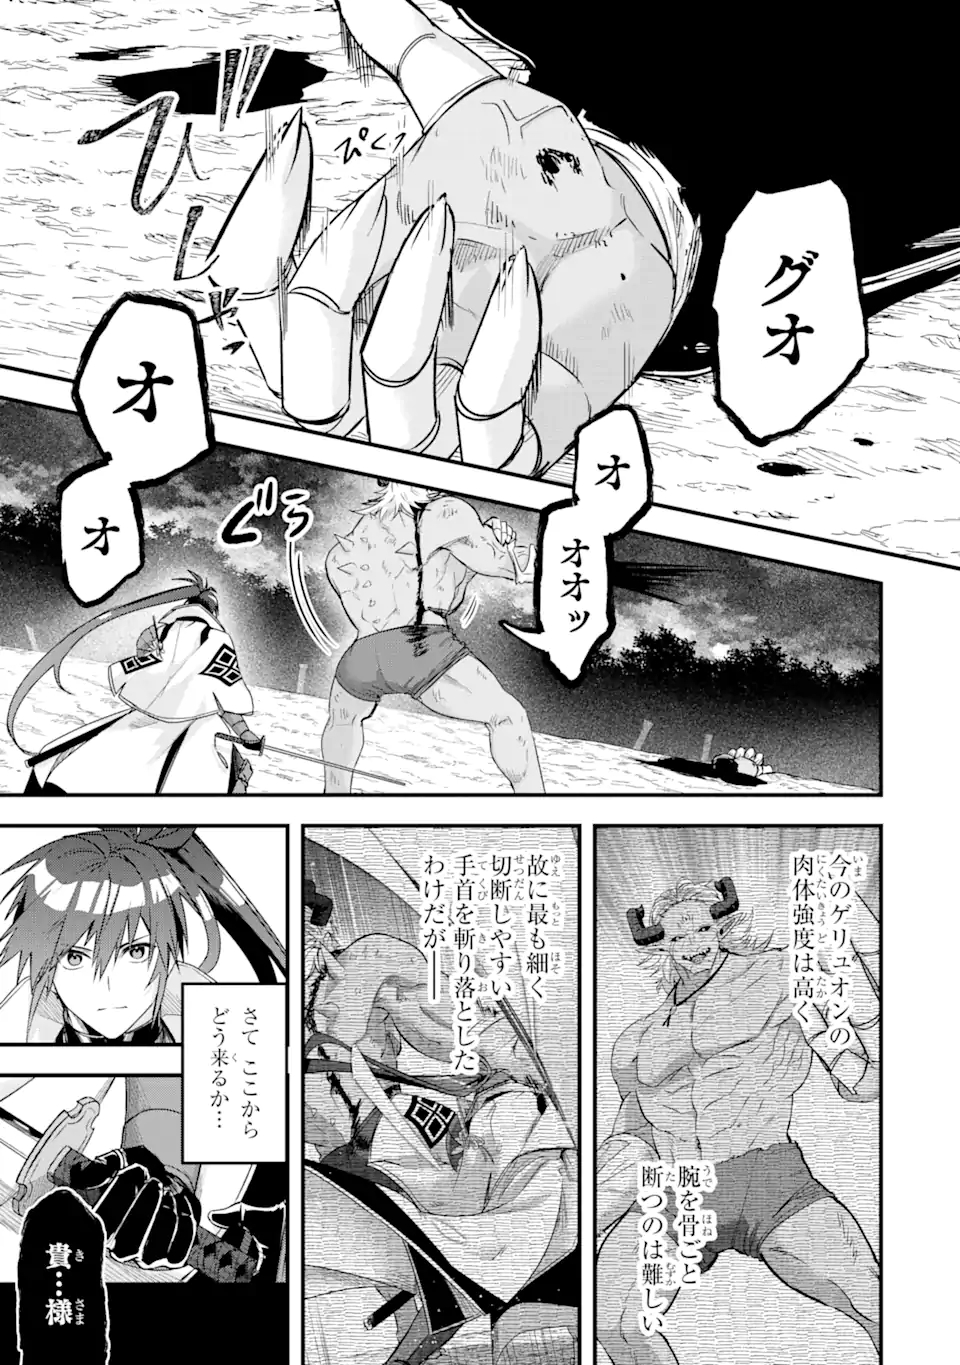 Magika Technica – Gendai Saikyou Kenshi ga Yuku VRMMO Sentouroku - Chapter 13.1 - Page 1